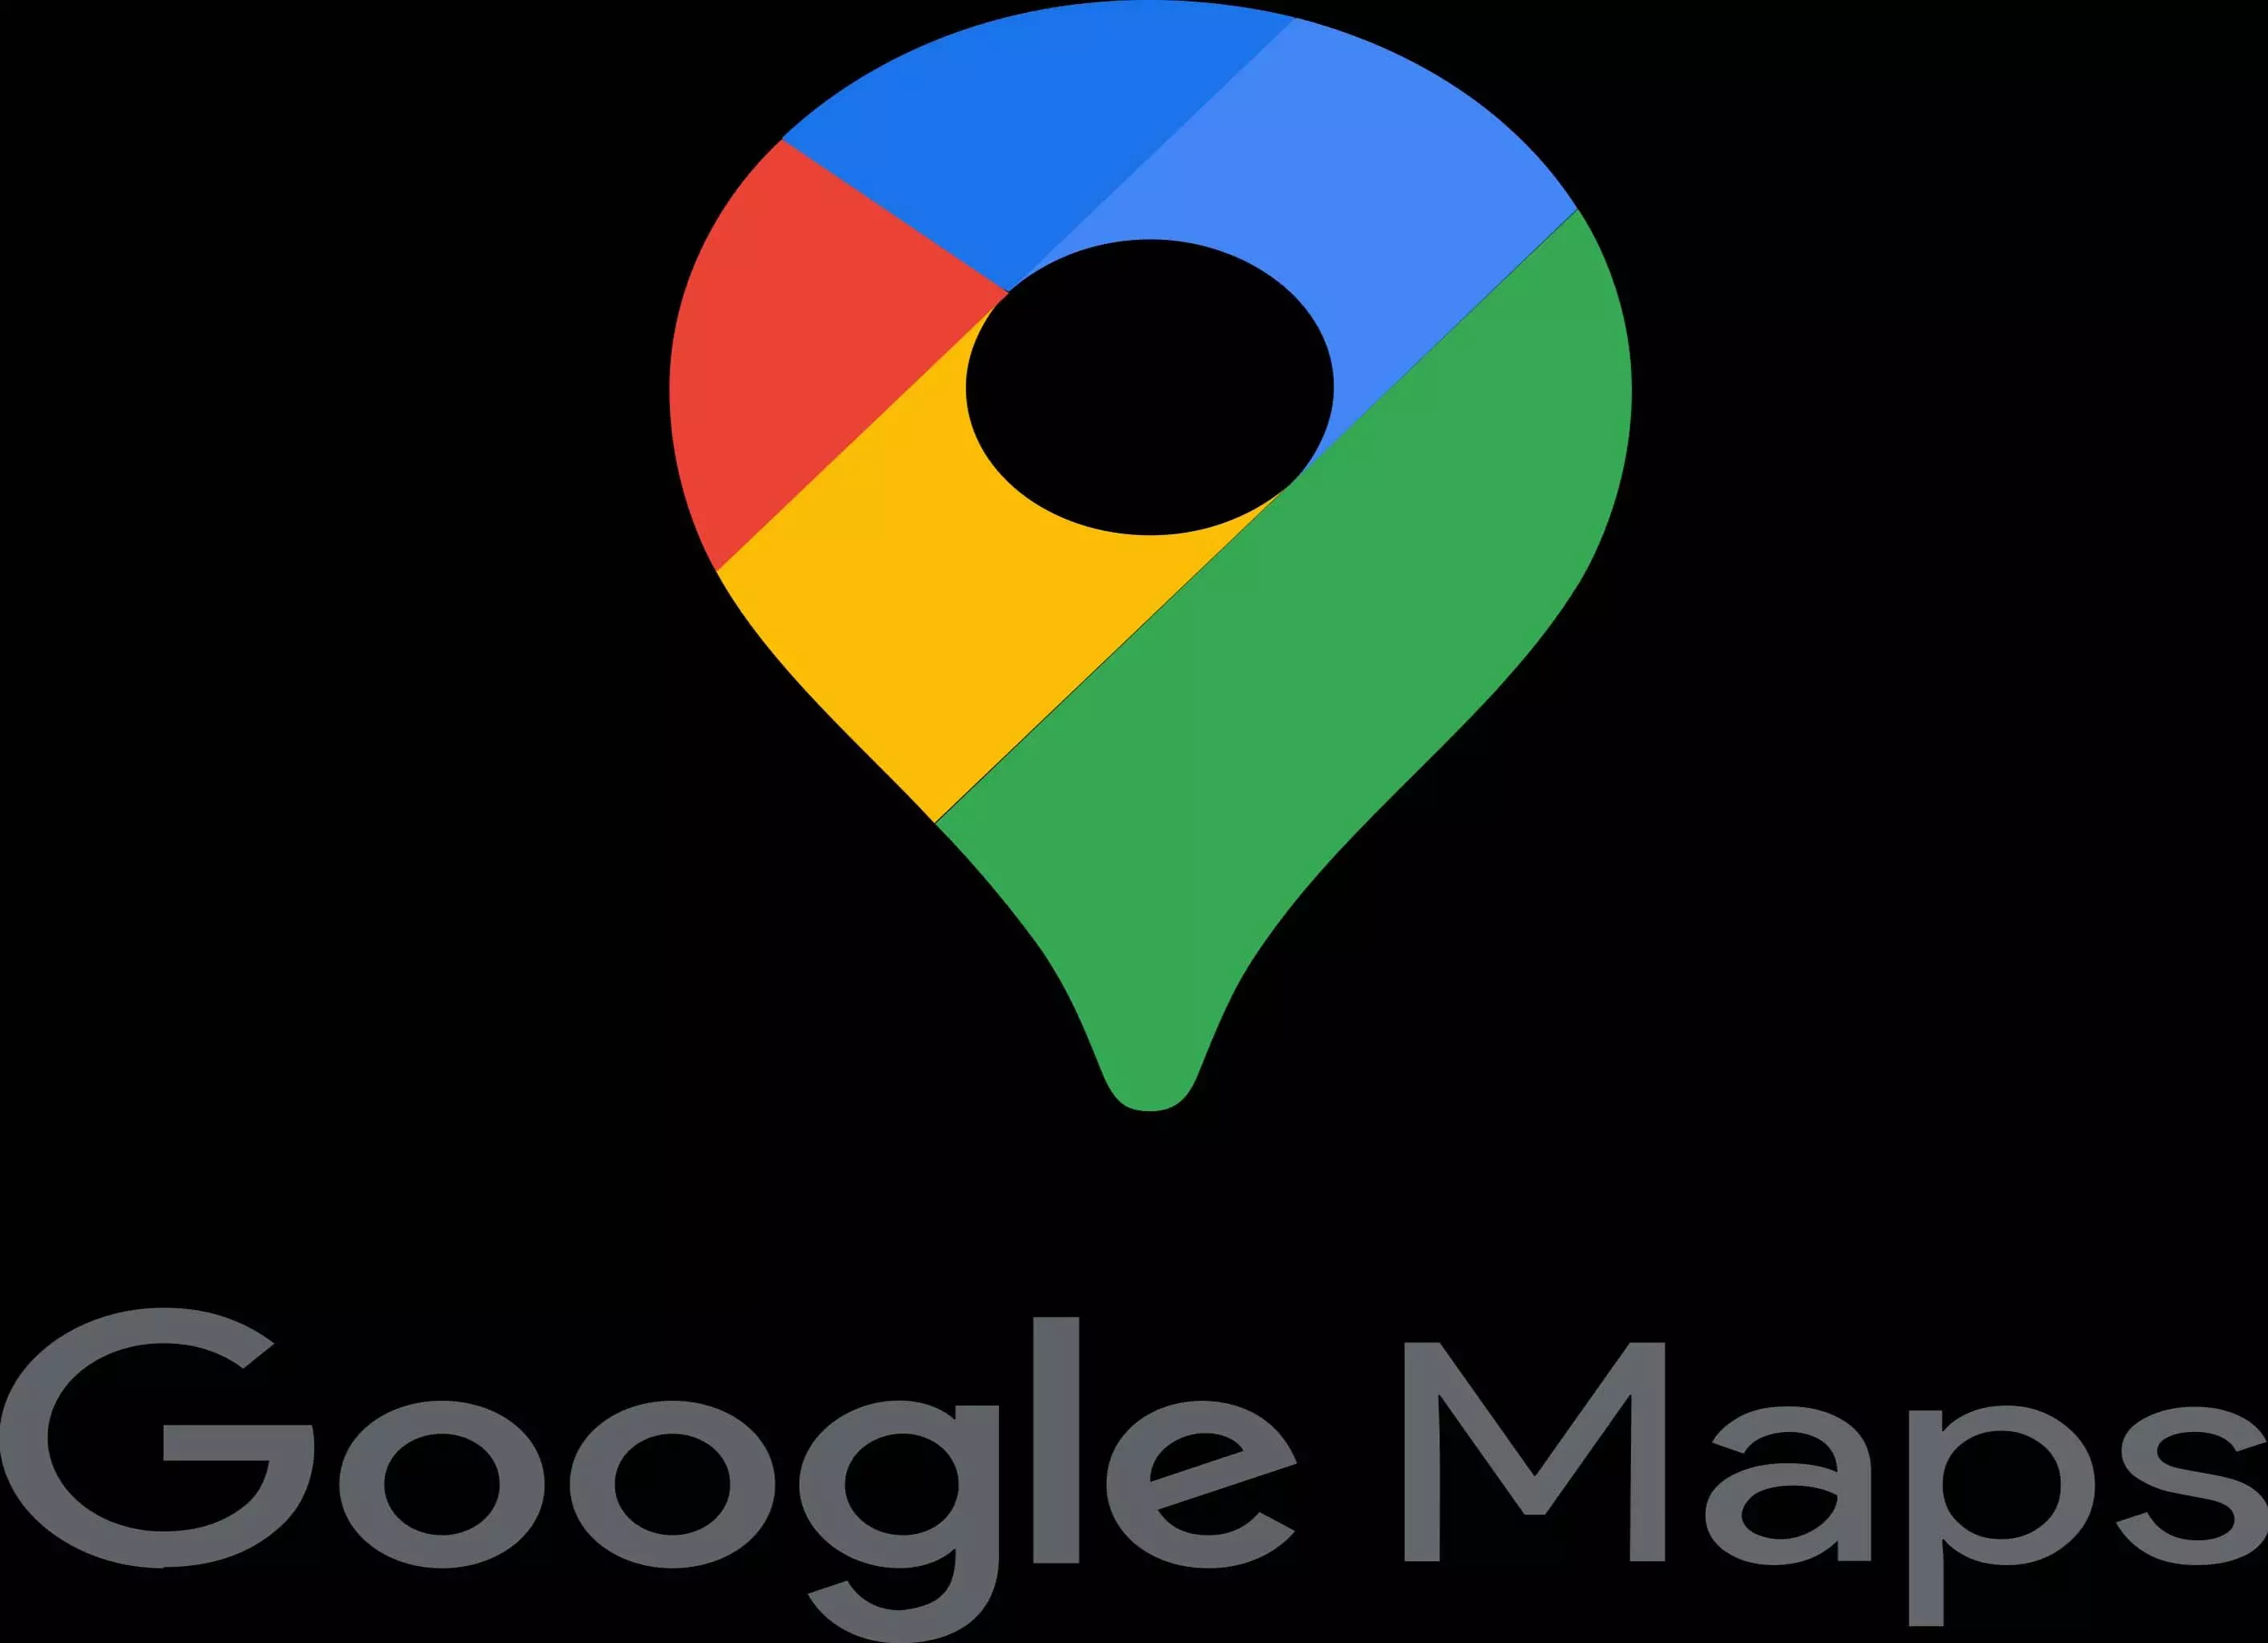 Google Maps: आफत में फंसी युवकों की जान, गूगल मैप्स के कारण